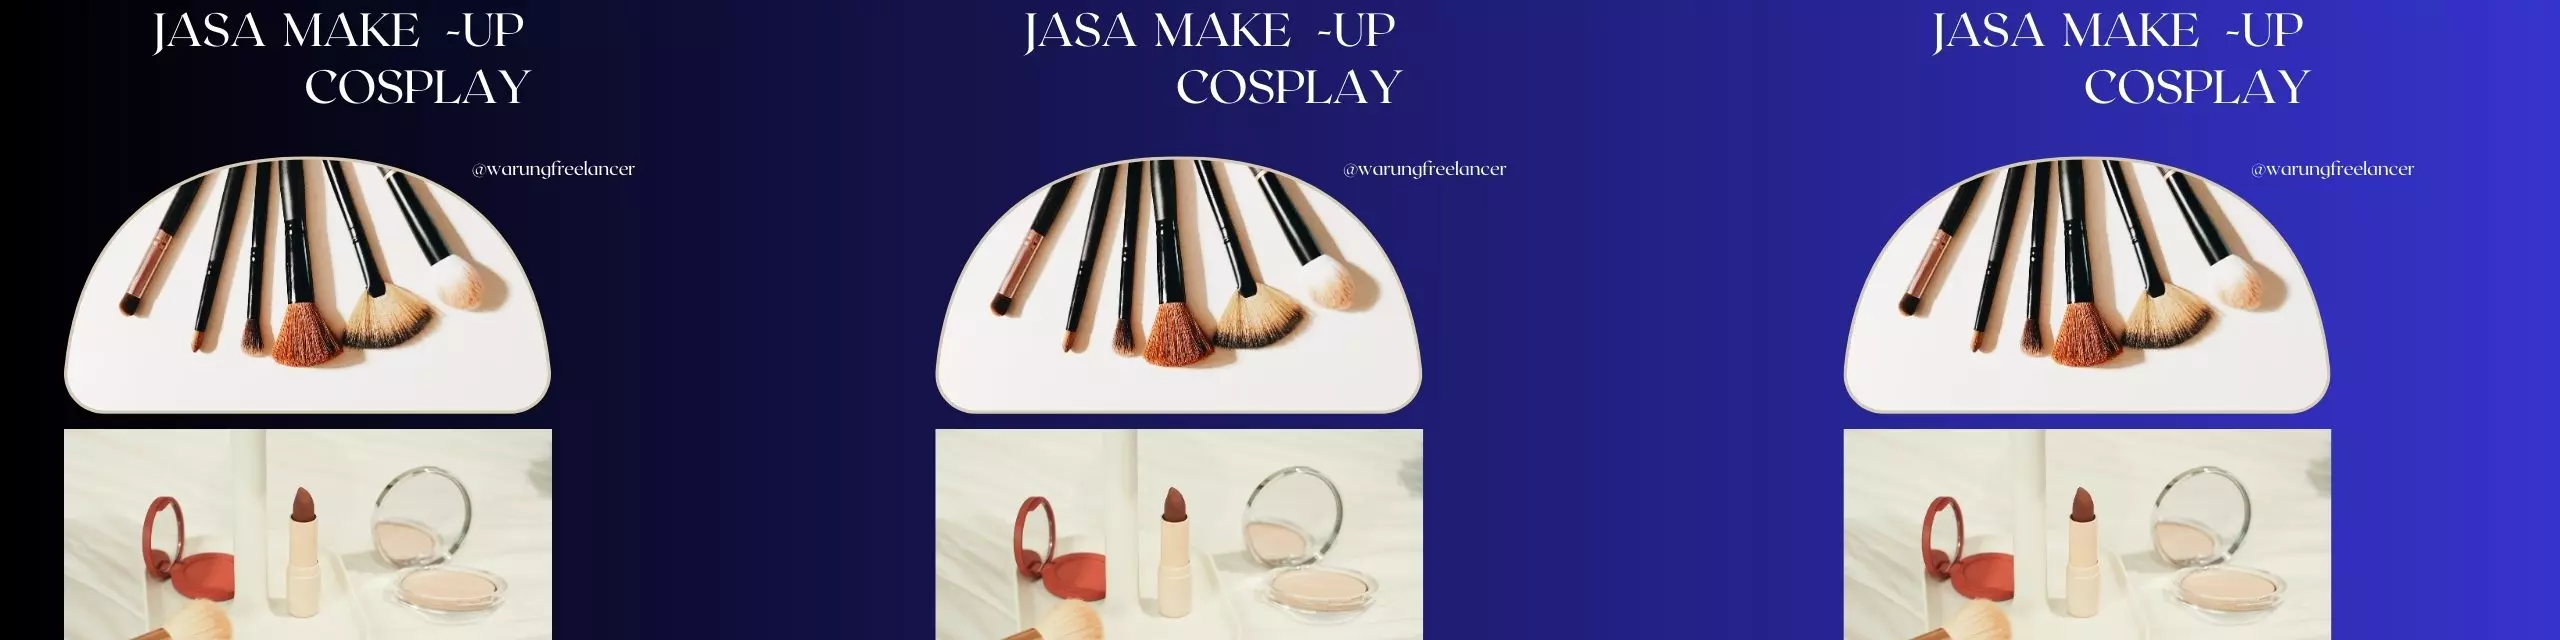 Jasa Make Up Cosplay